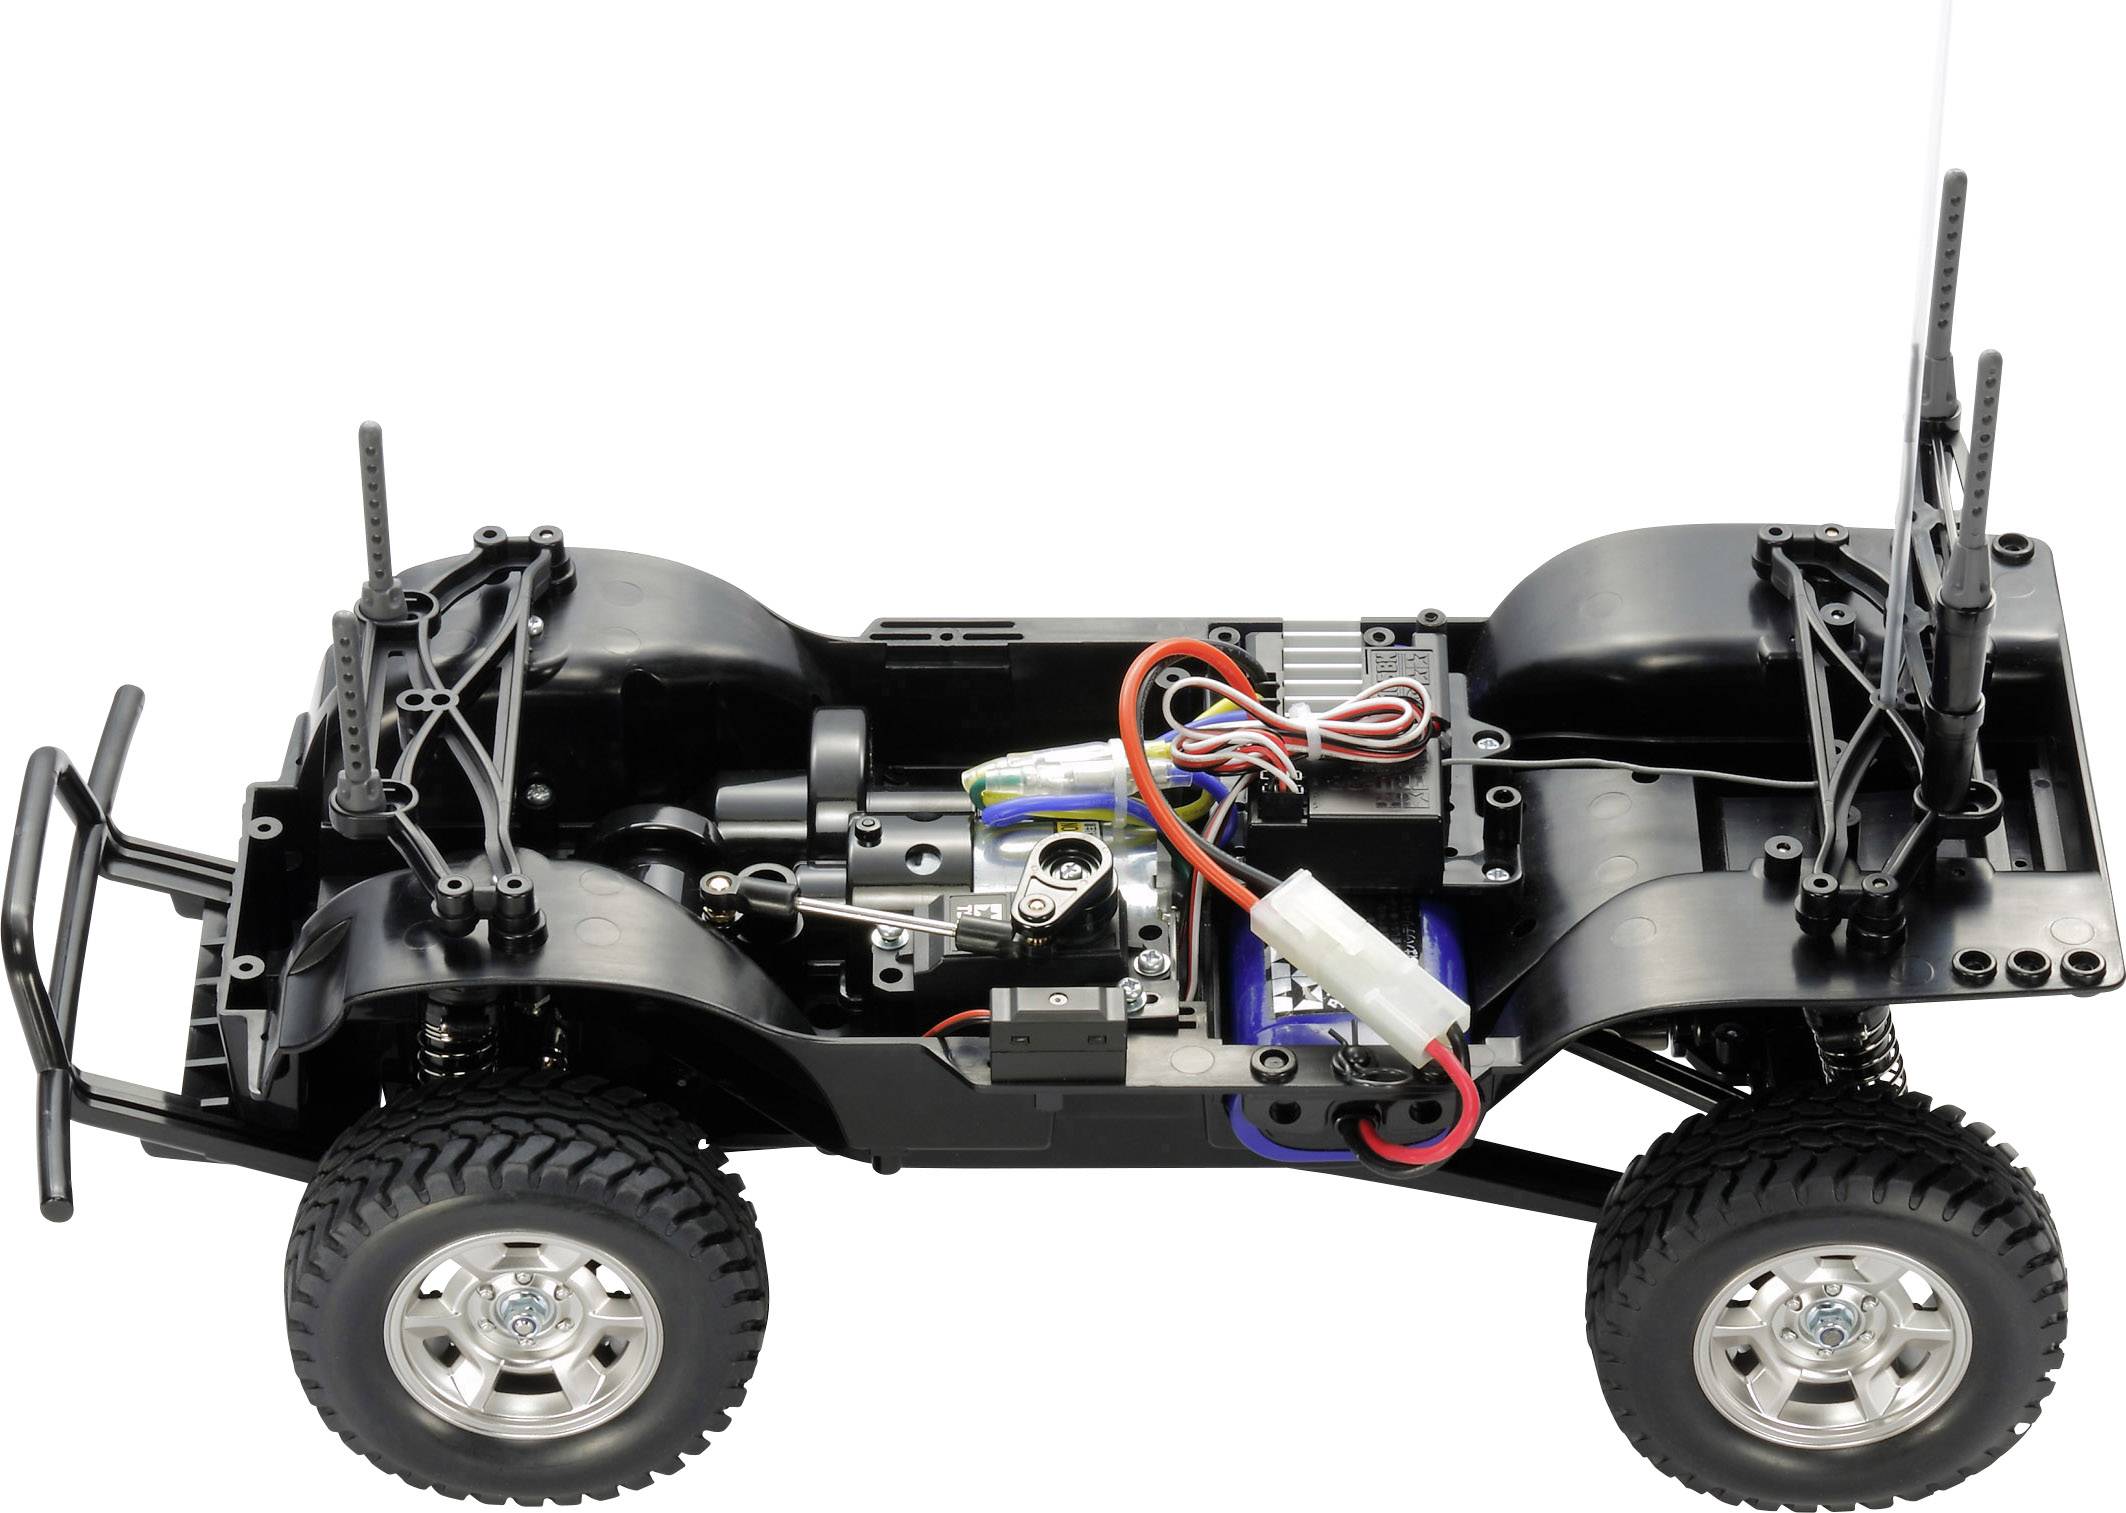 the rover conrad